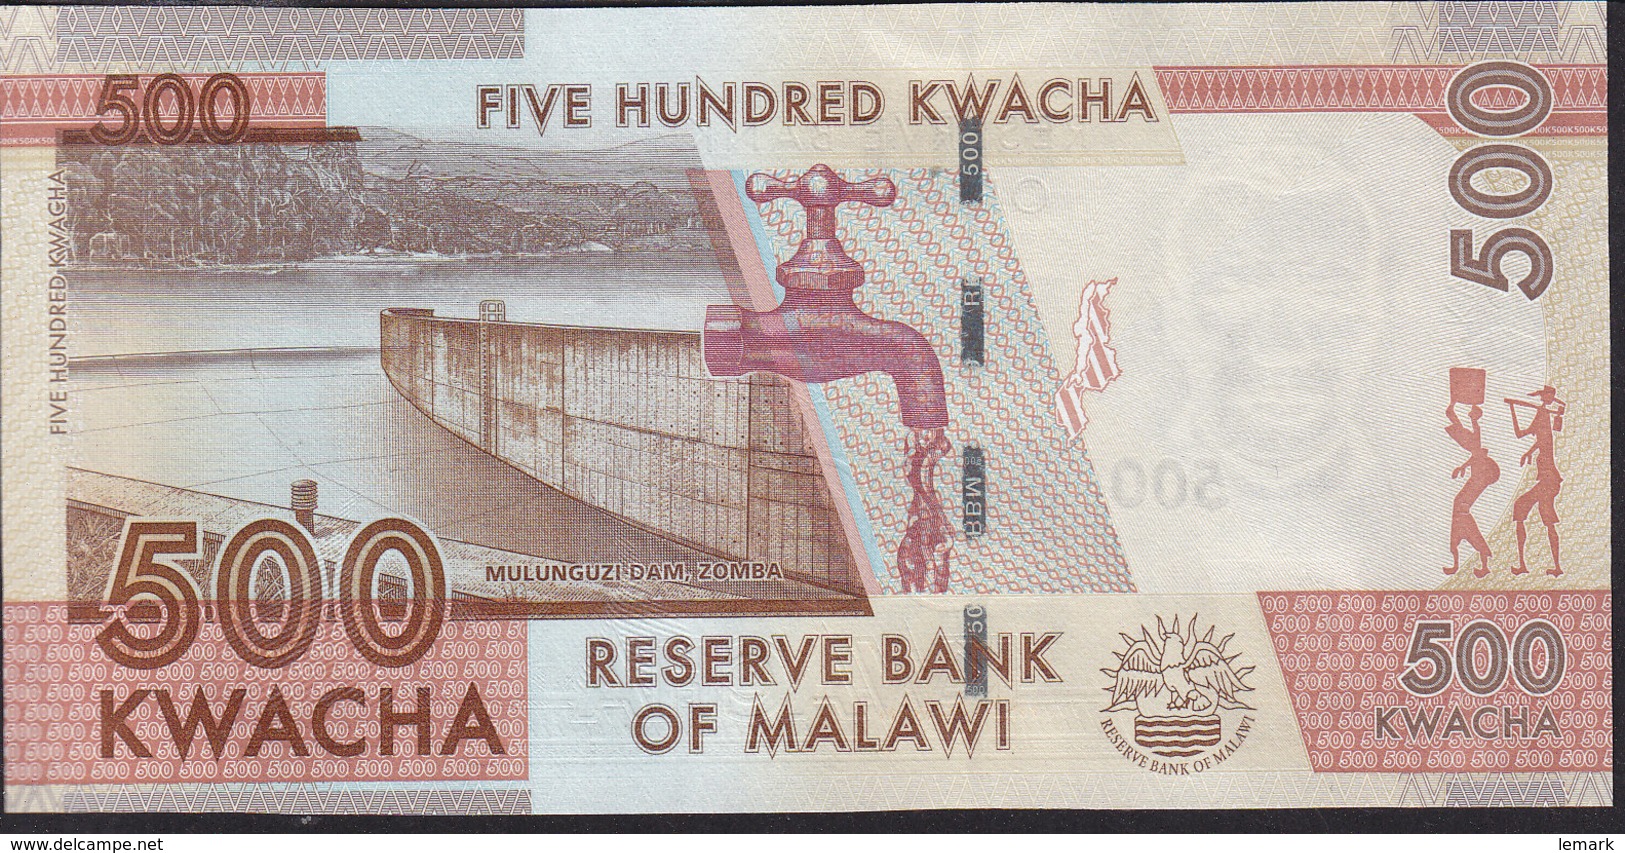 Malawi 500 Kwacha 2014 P61 UNC - Malawi